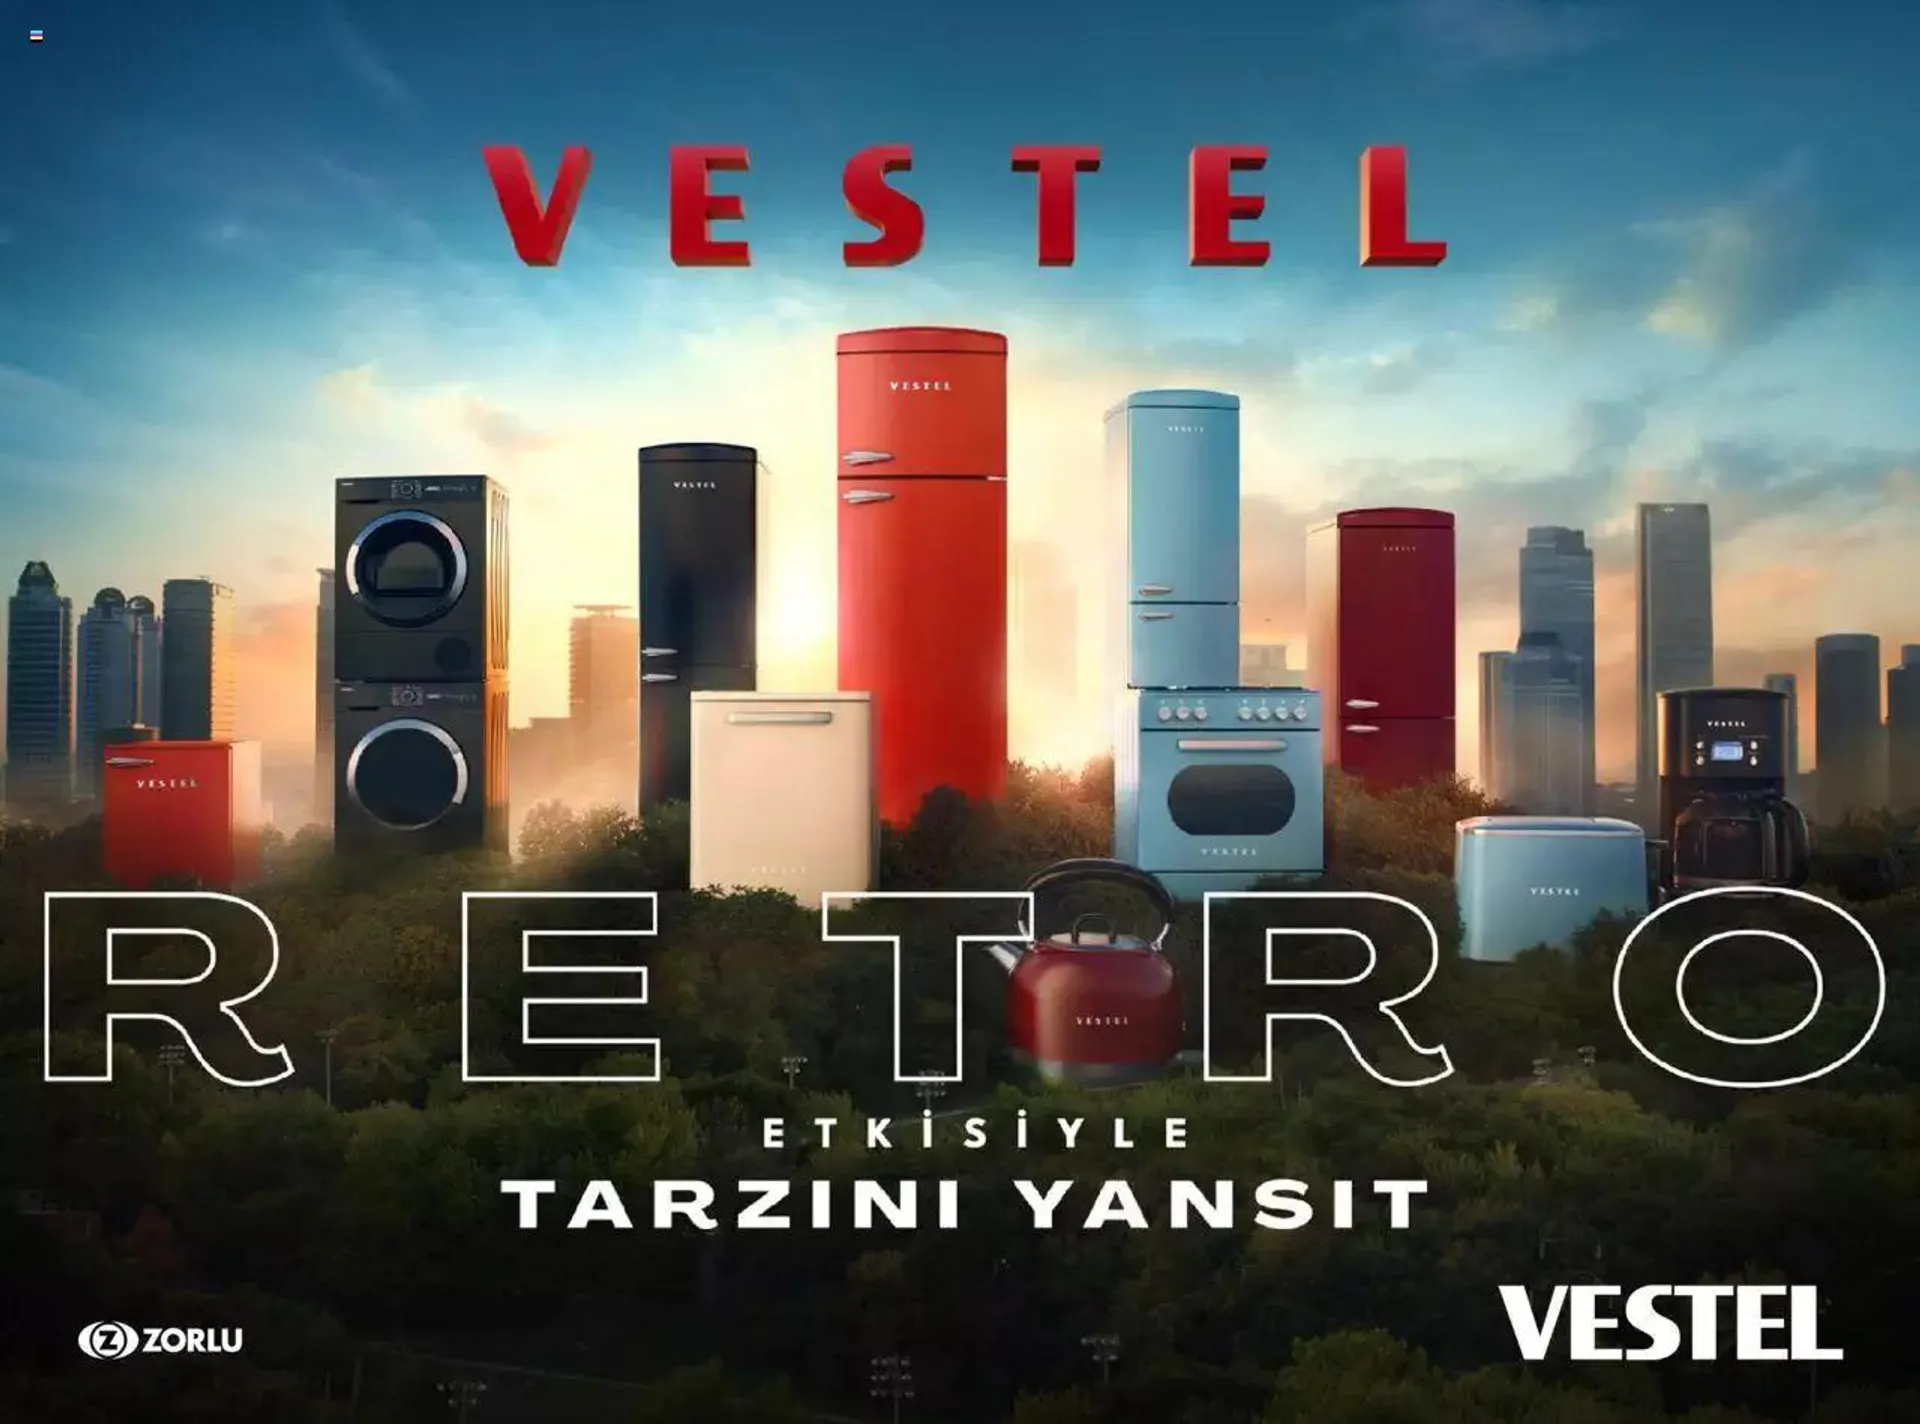 Vestel Retro Katalog - 0